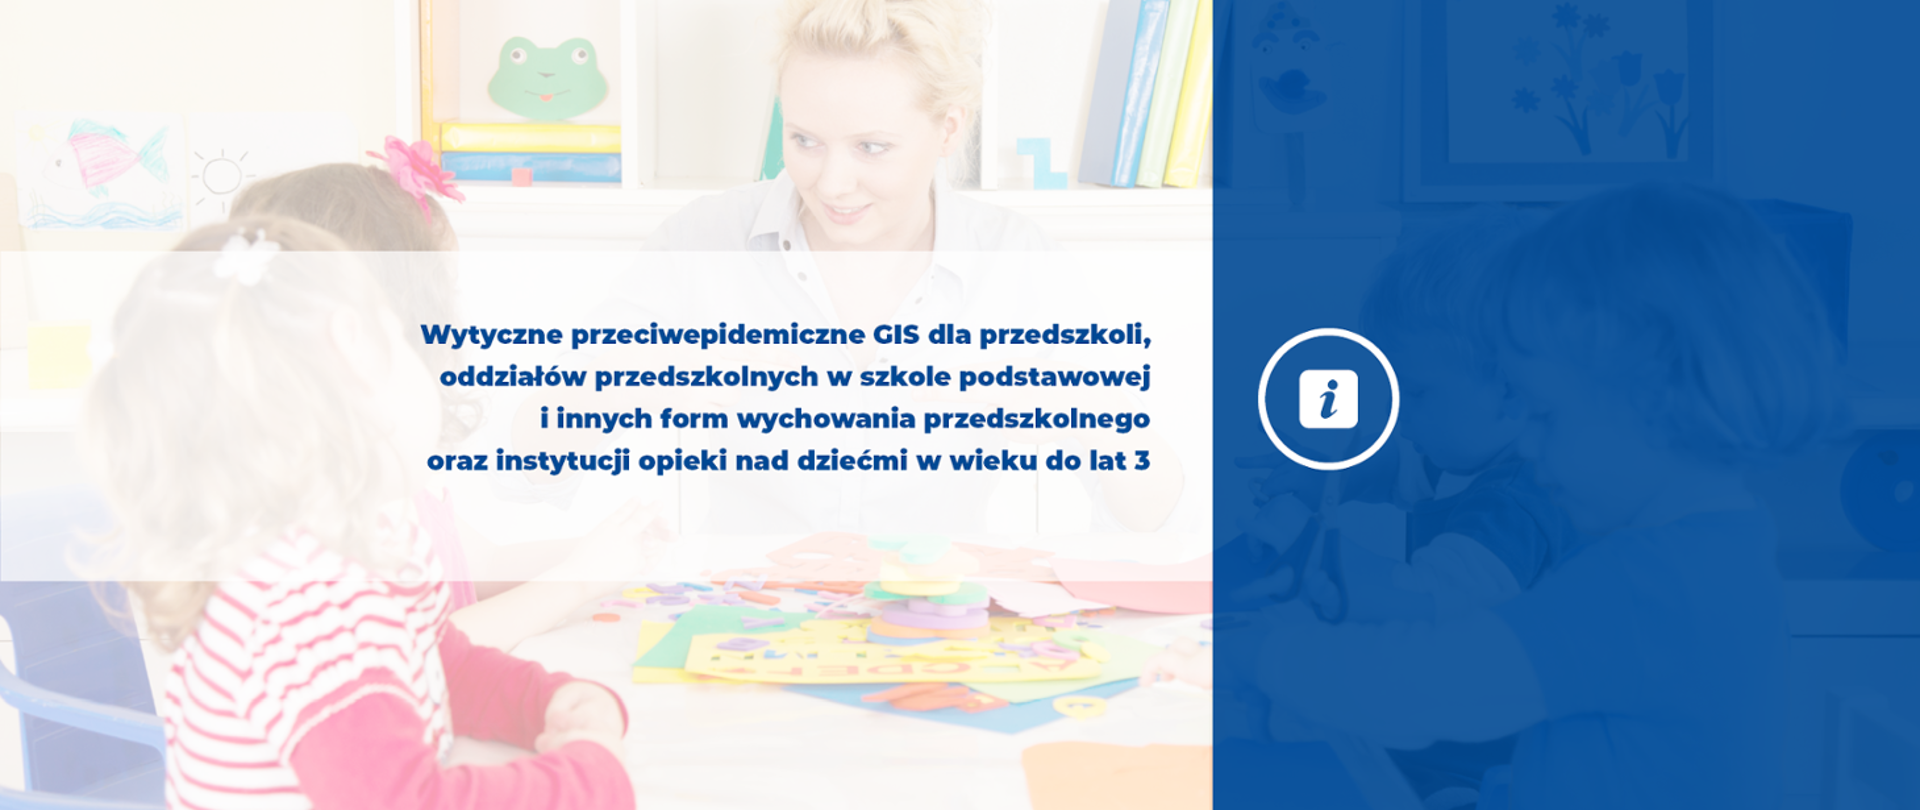 Wytyczne przeciwepidemiczne GIS dla przedszkoli, oddziałów przedszkolnych w szkole podstawowej i innych form wychowania przedszkolnego oraz instytucji opieki nad dziećmi w wieku do lat 3